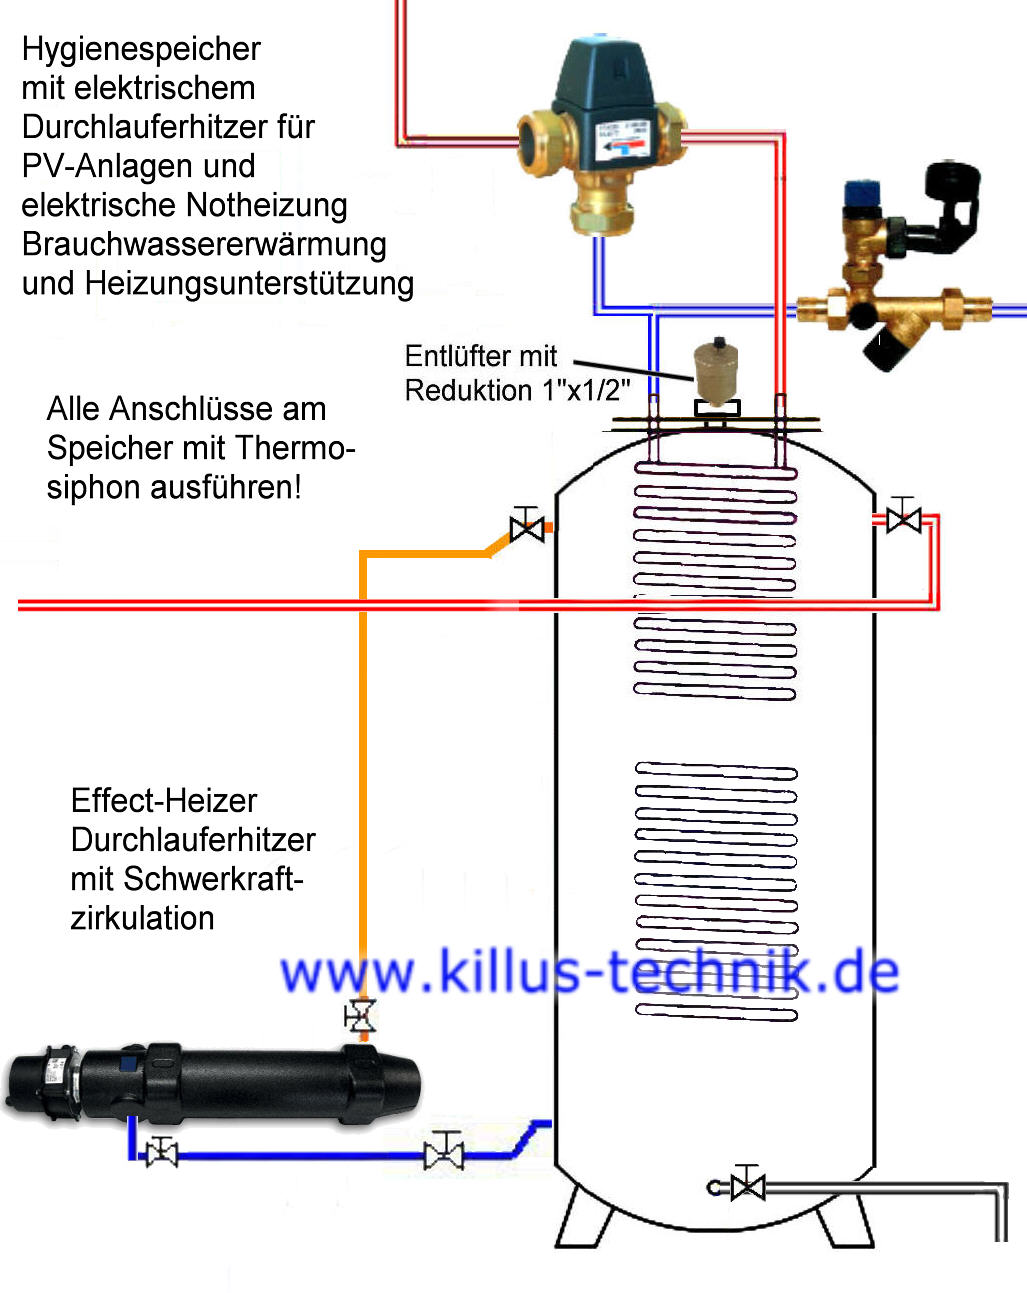 Durchlauferhitzer an Hygienespeicher ohne Pumpe Schwerkraft Killus-Technik.de